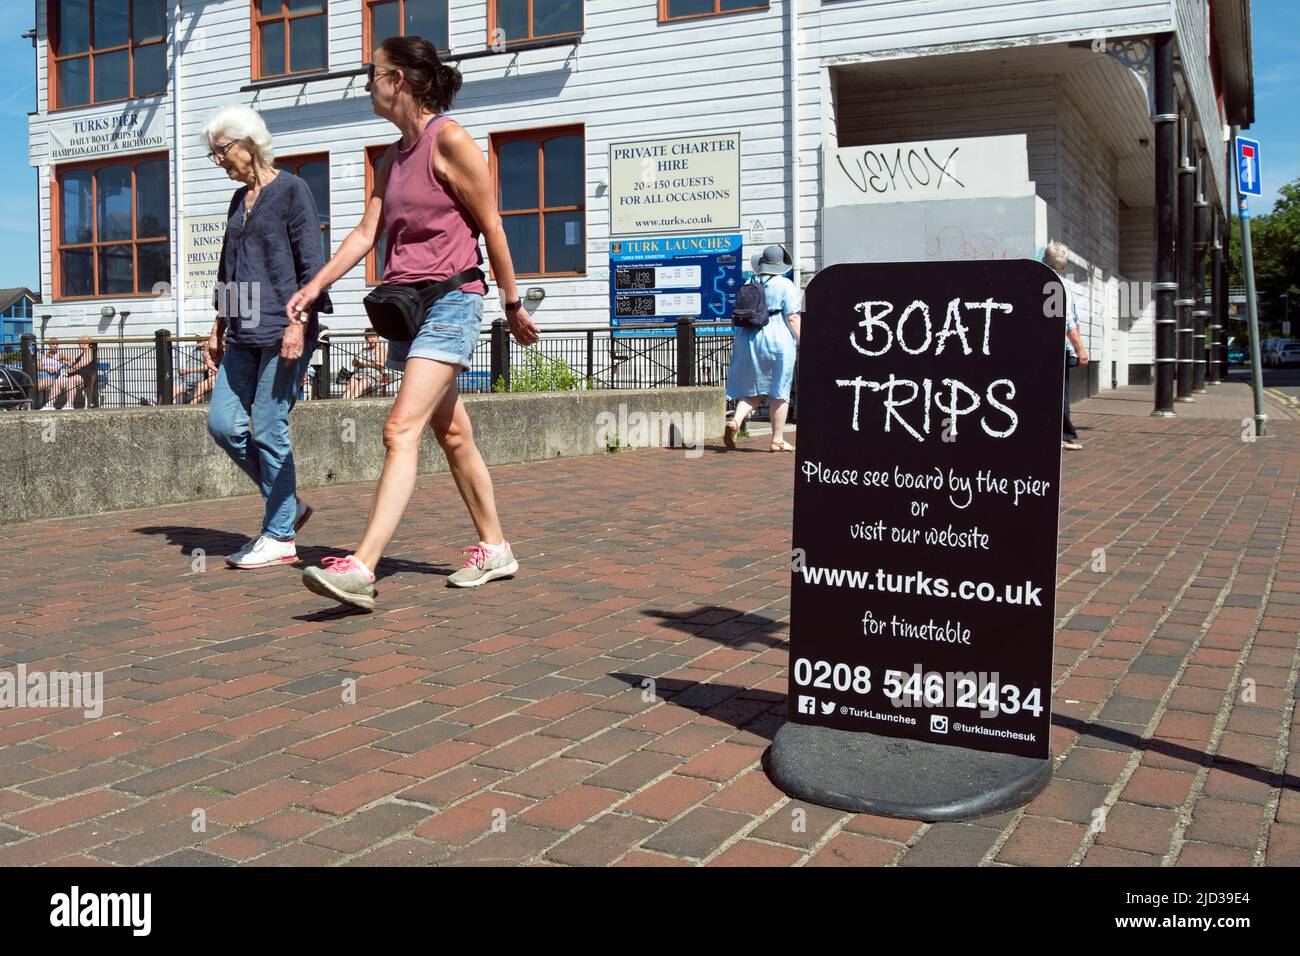 due donne camminano oltre un cartello per le gite in barca, gestito da una compagnia chiamata turks, a kingston upon thames, surrey, inghilterra Foto Stock